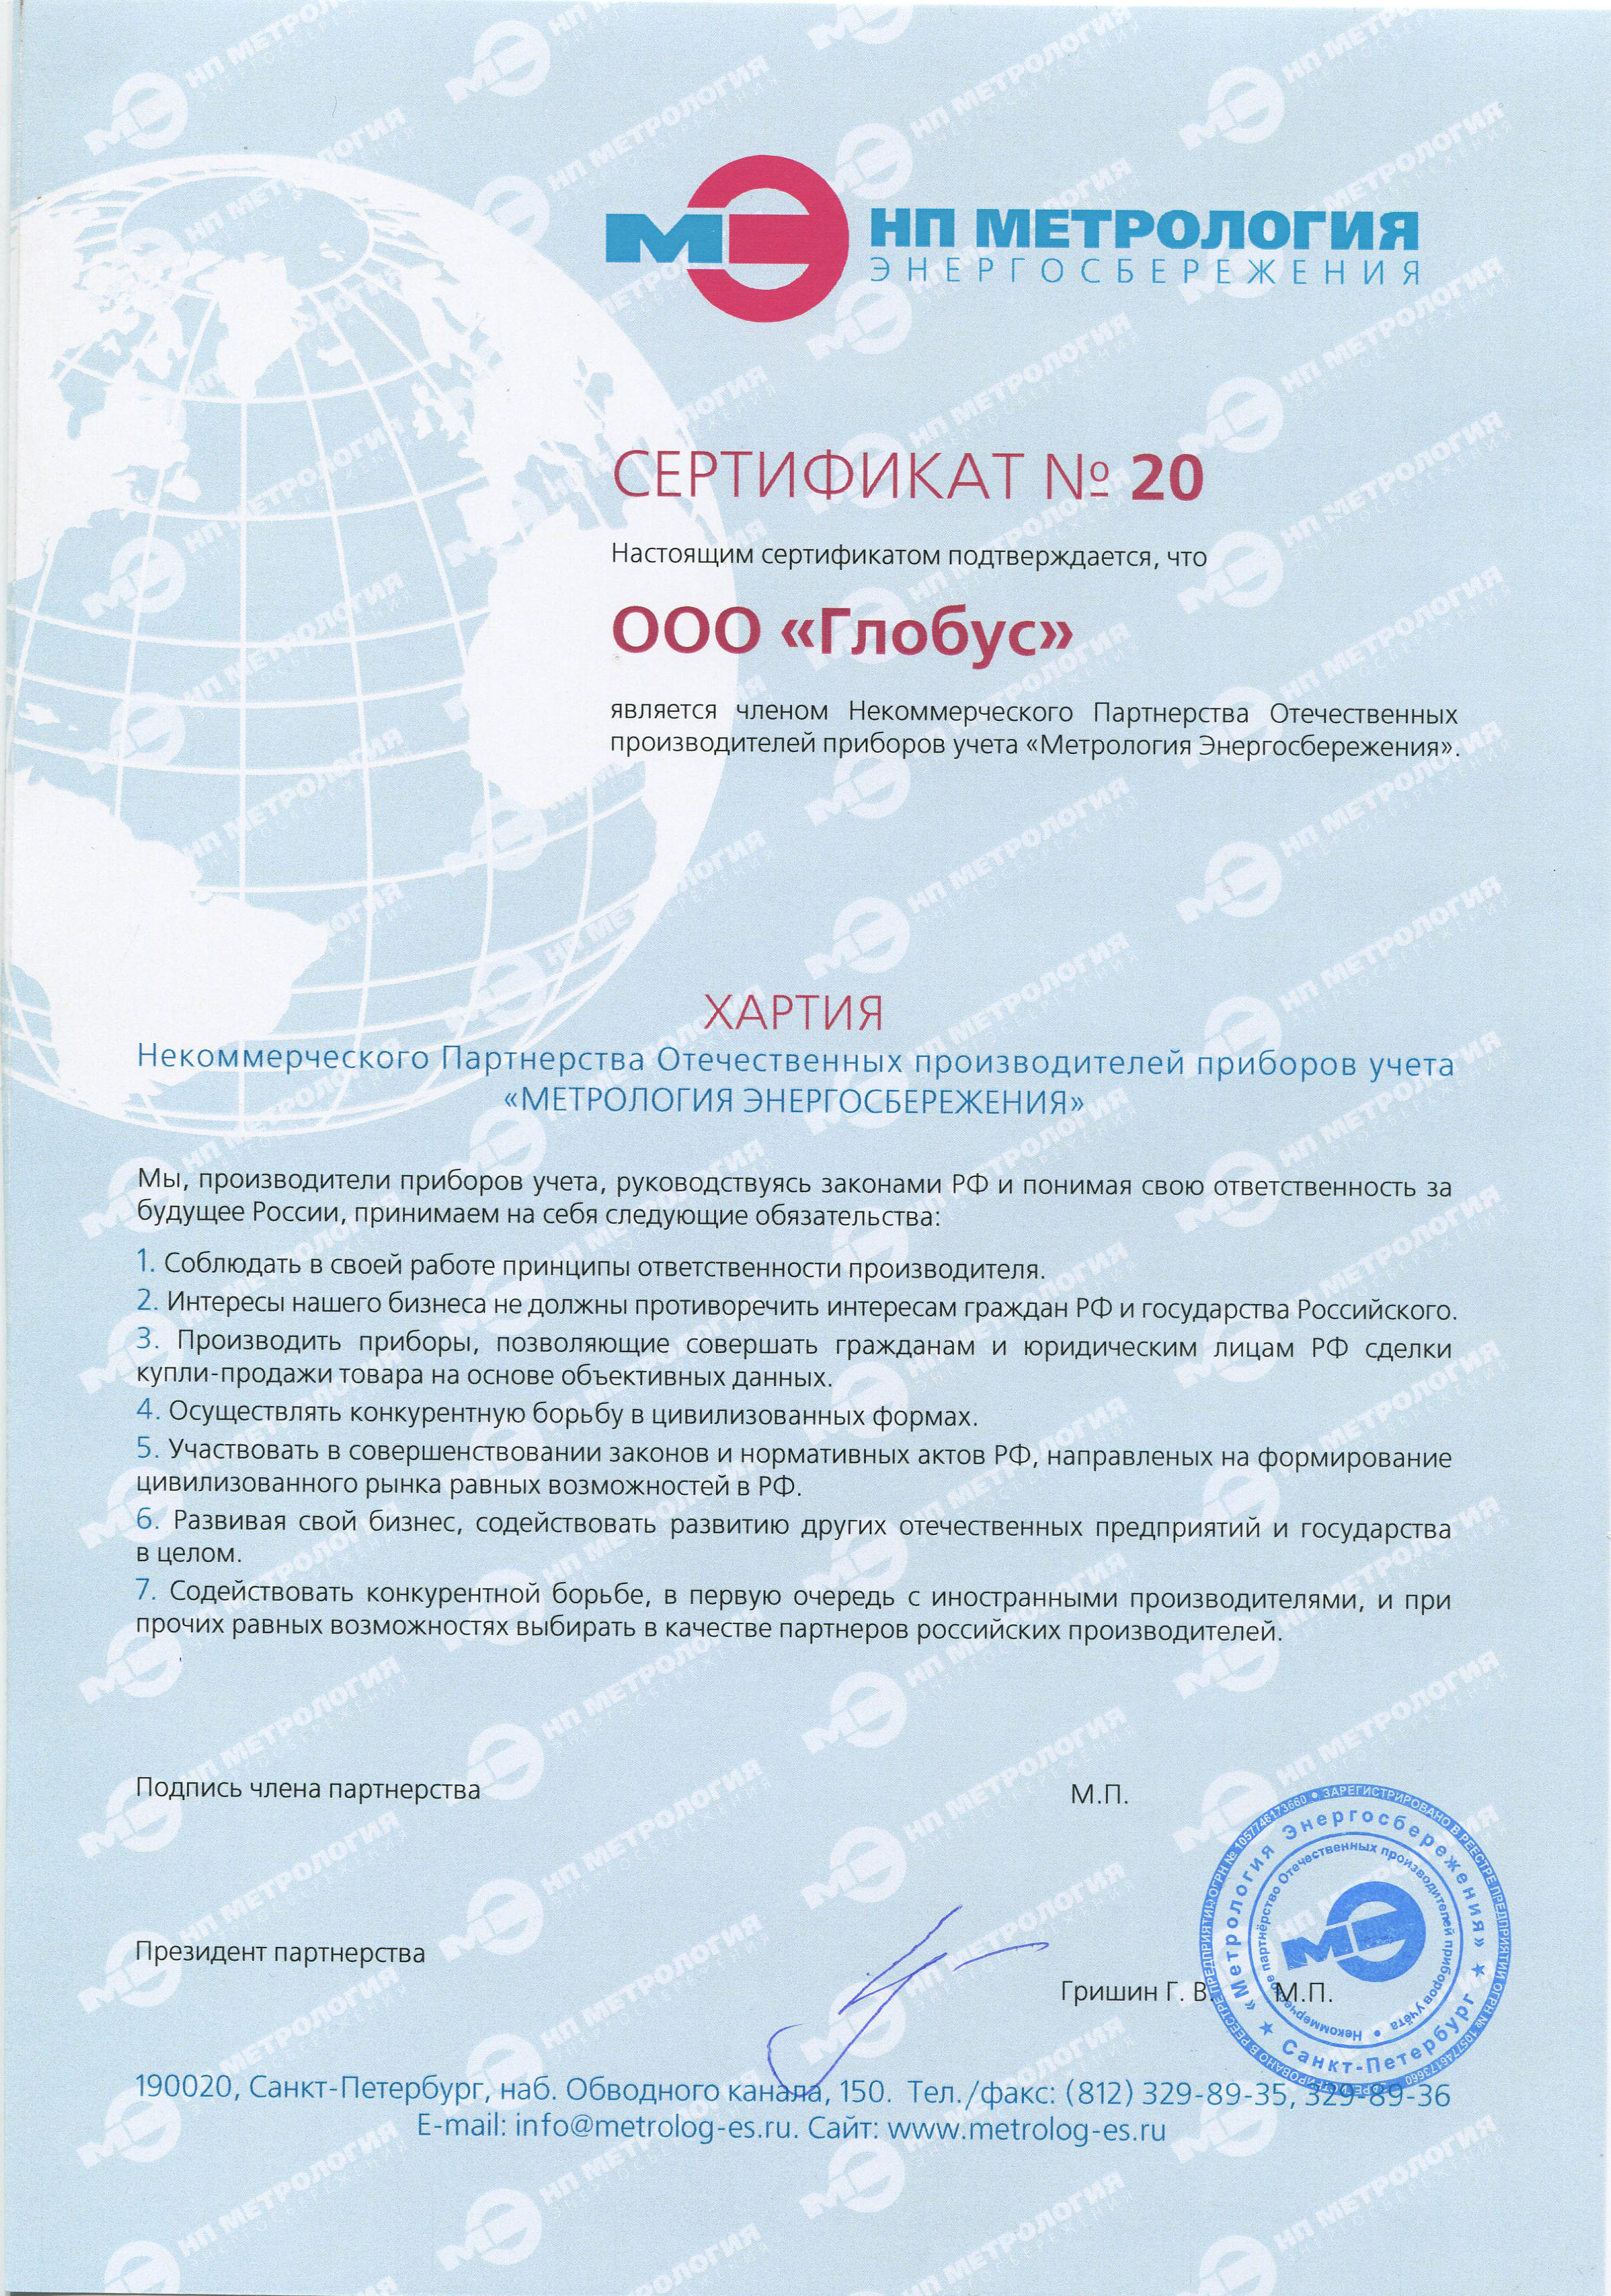 Сертификат, подтверждающий вступление ООО "Глобус" в НП ОППУ "Метрология Энергосбережения"